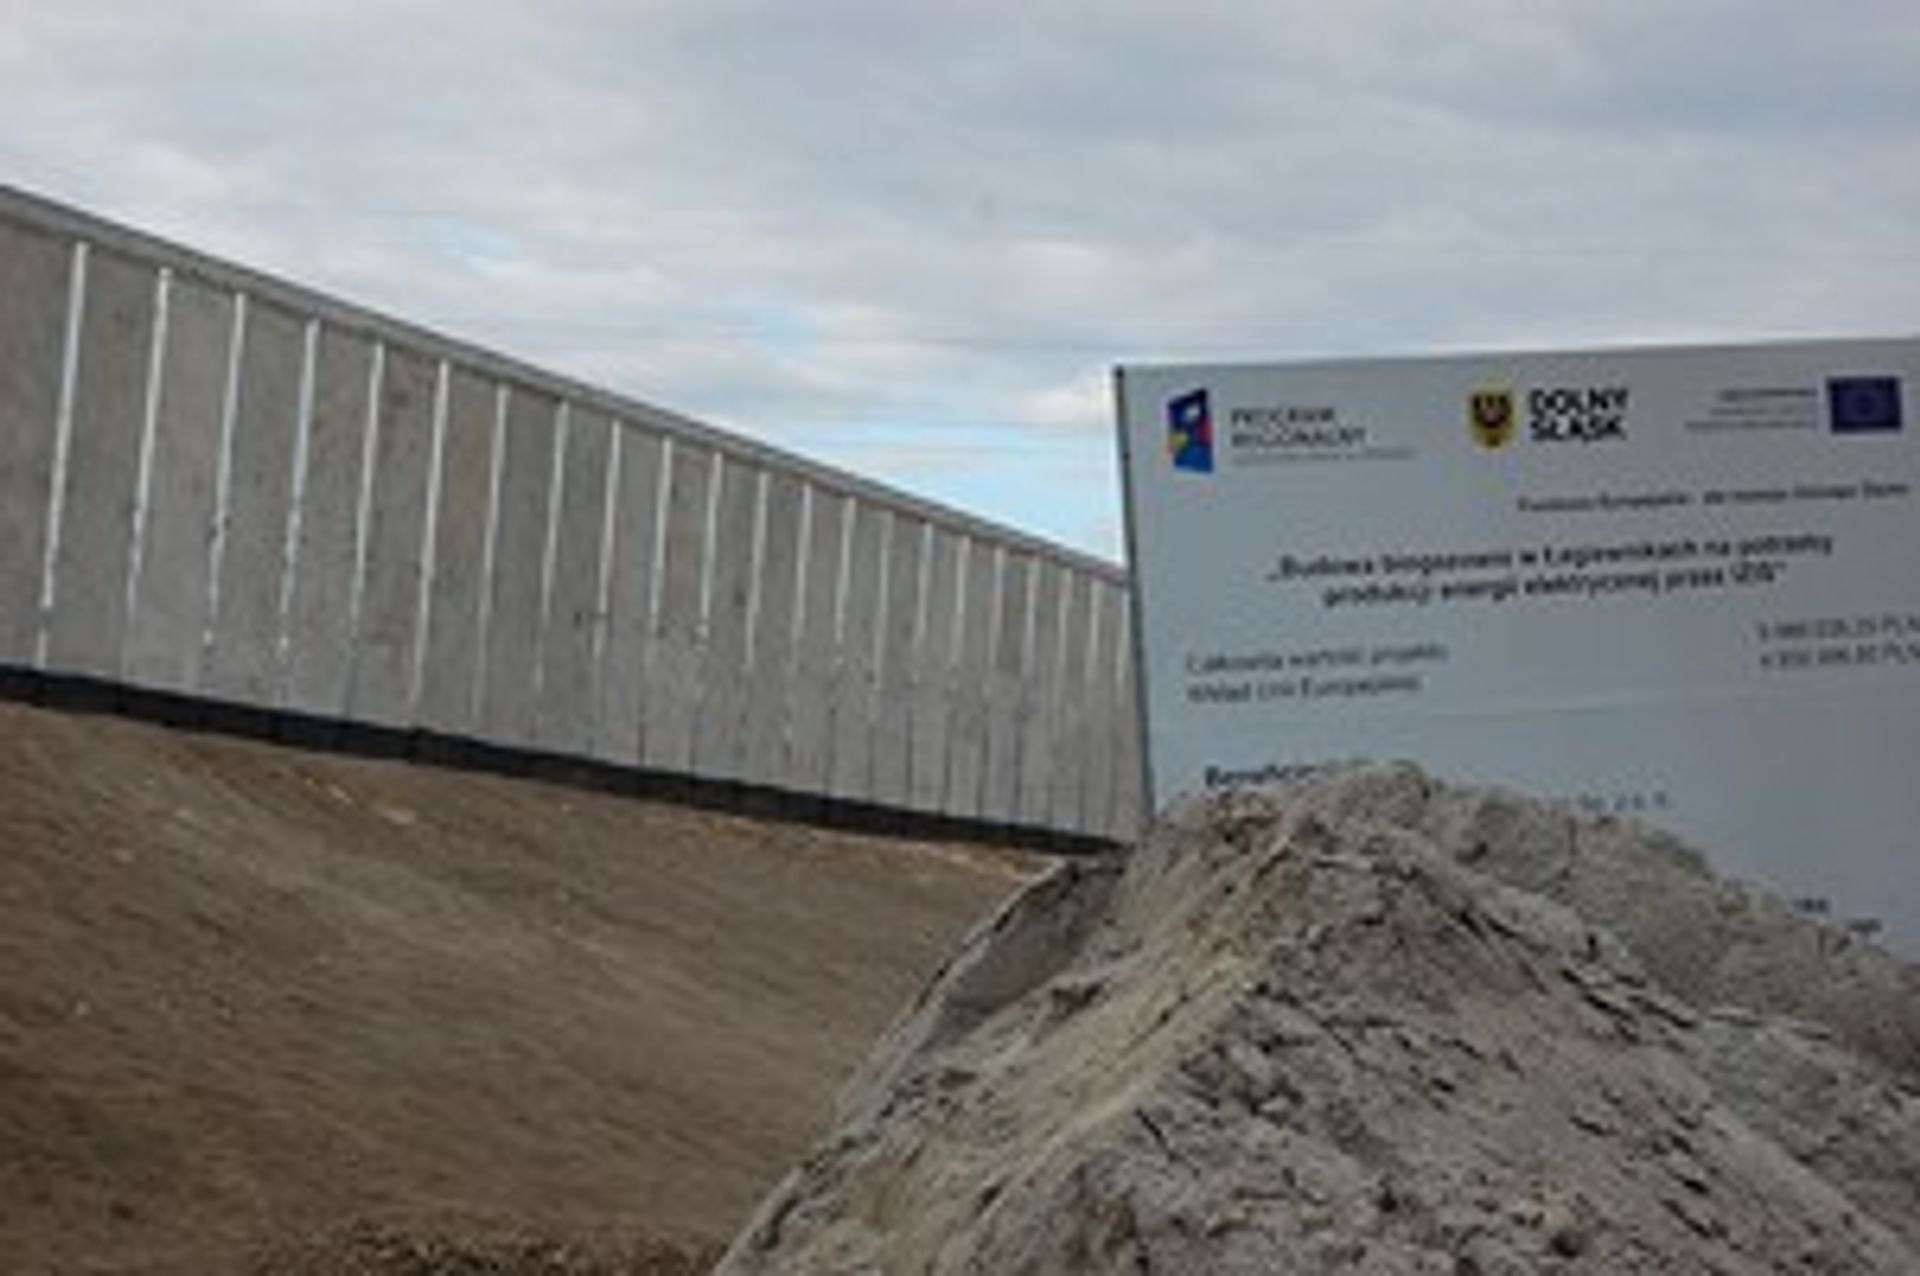  Biogazownia w Łagiewnikach ruszy w czerwcu 2013 roku